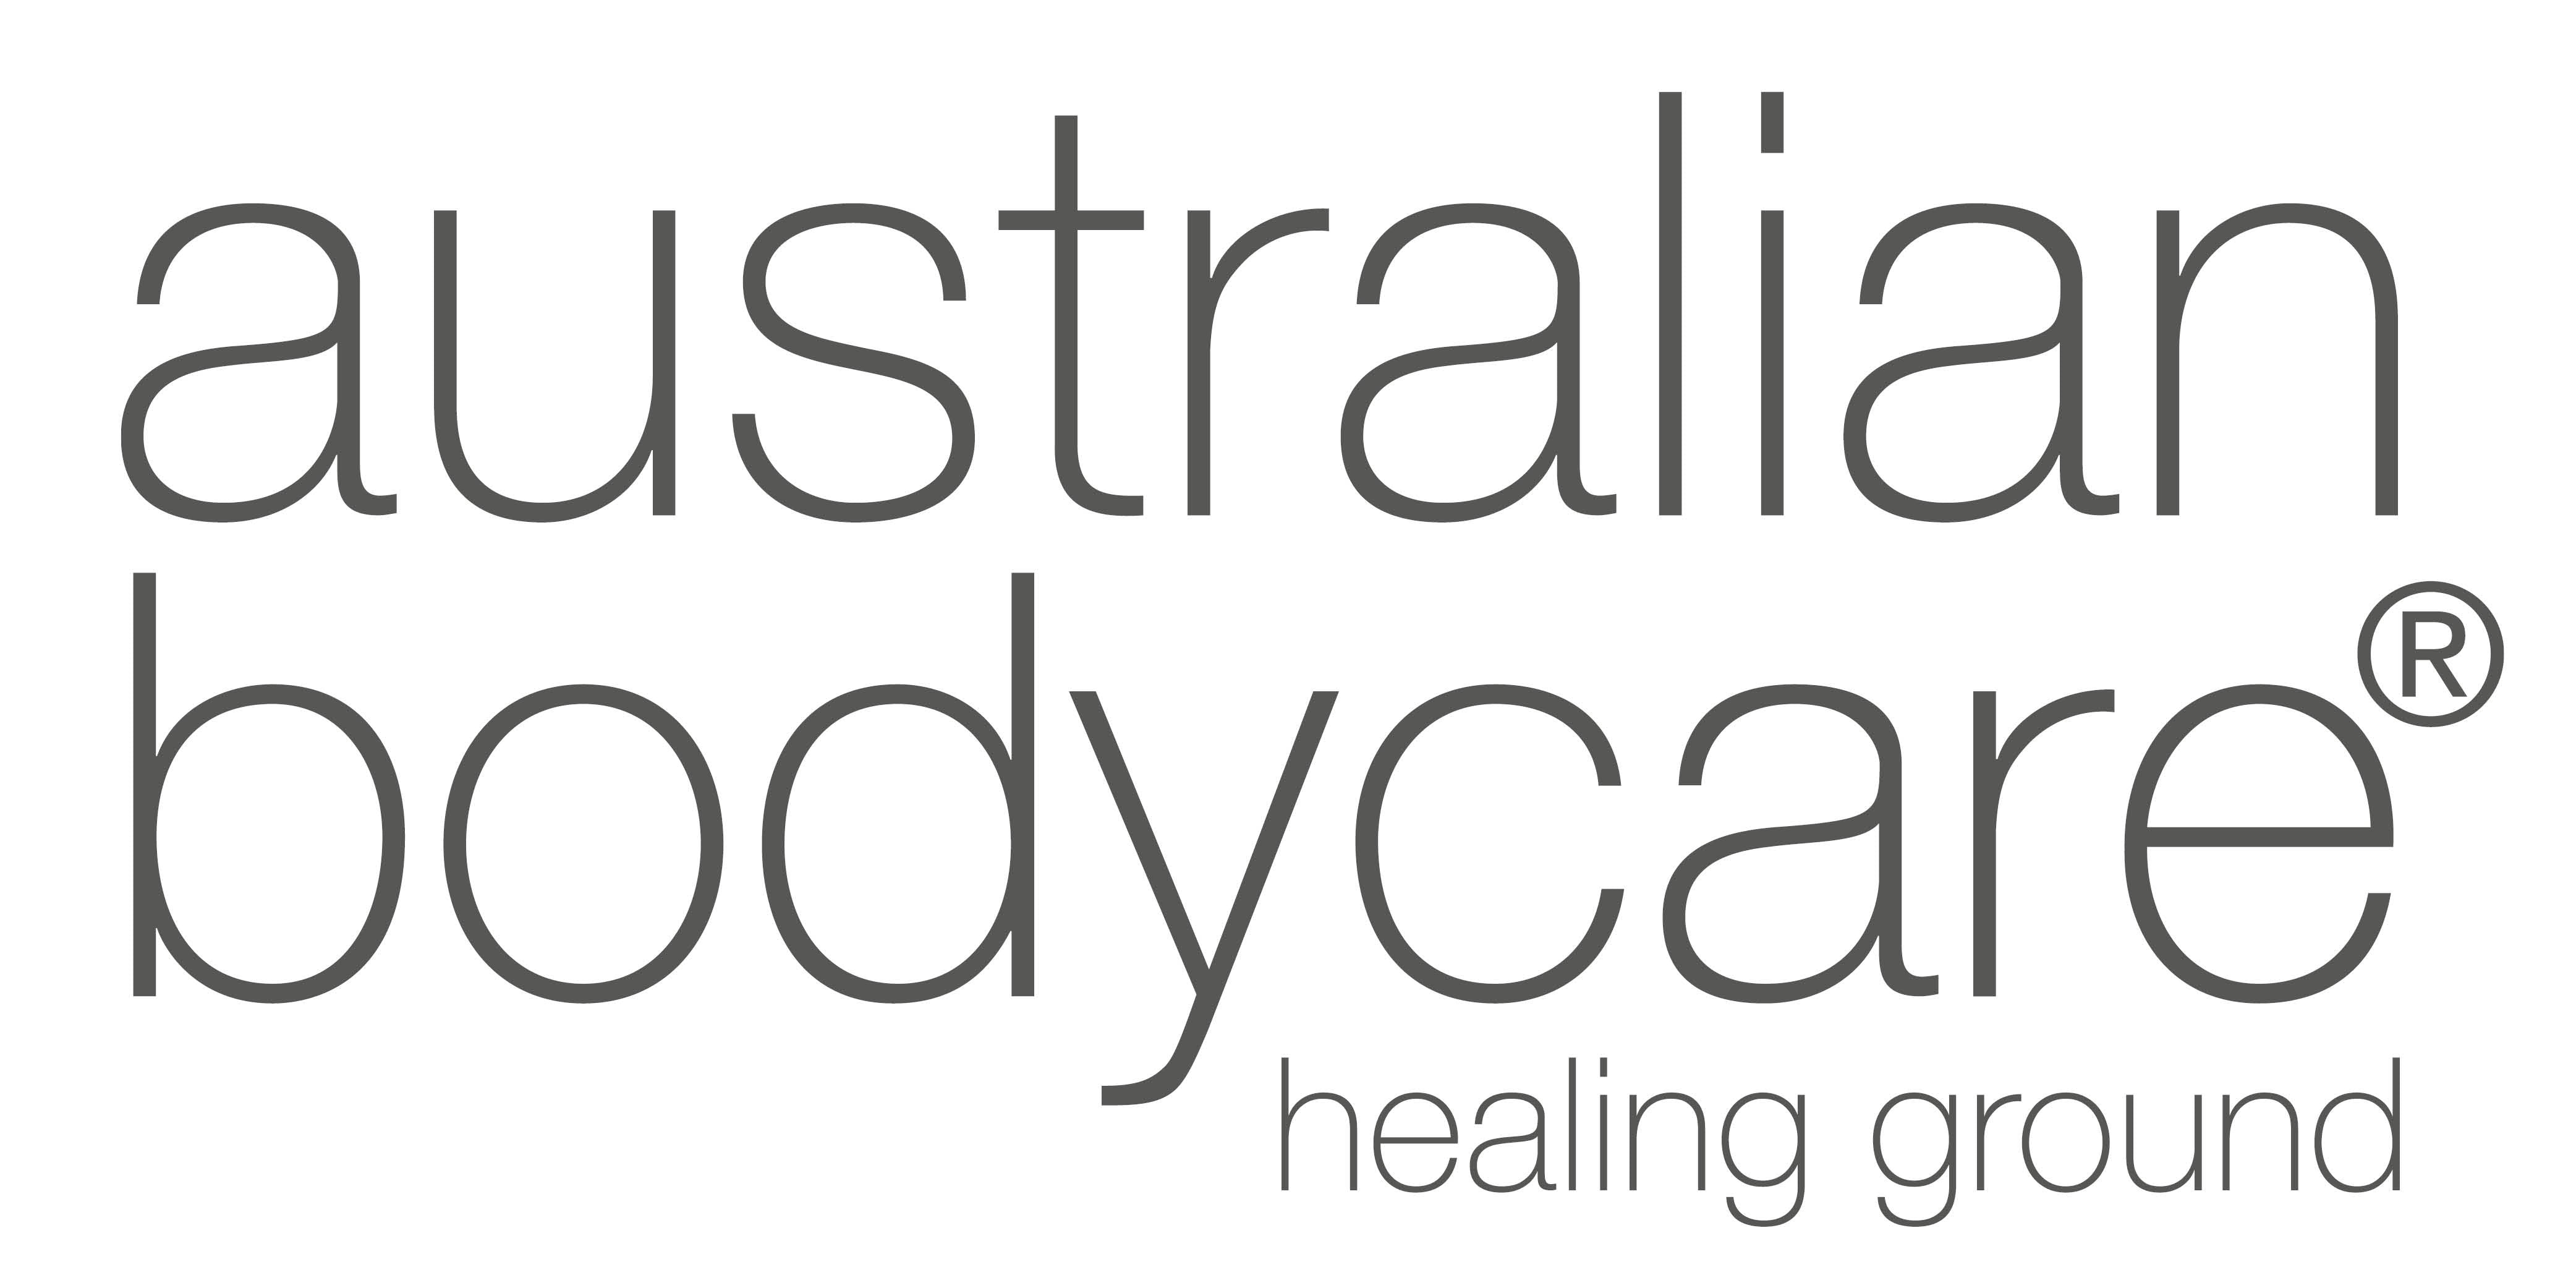 Kontakt bodycare | & telefonnummer Australian bodycare